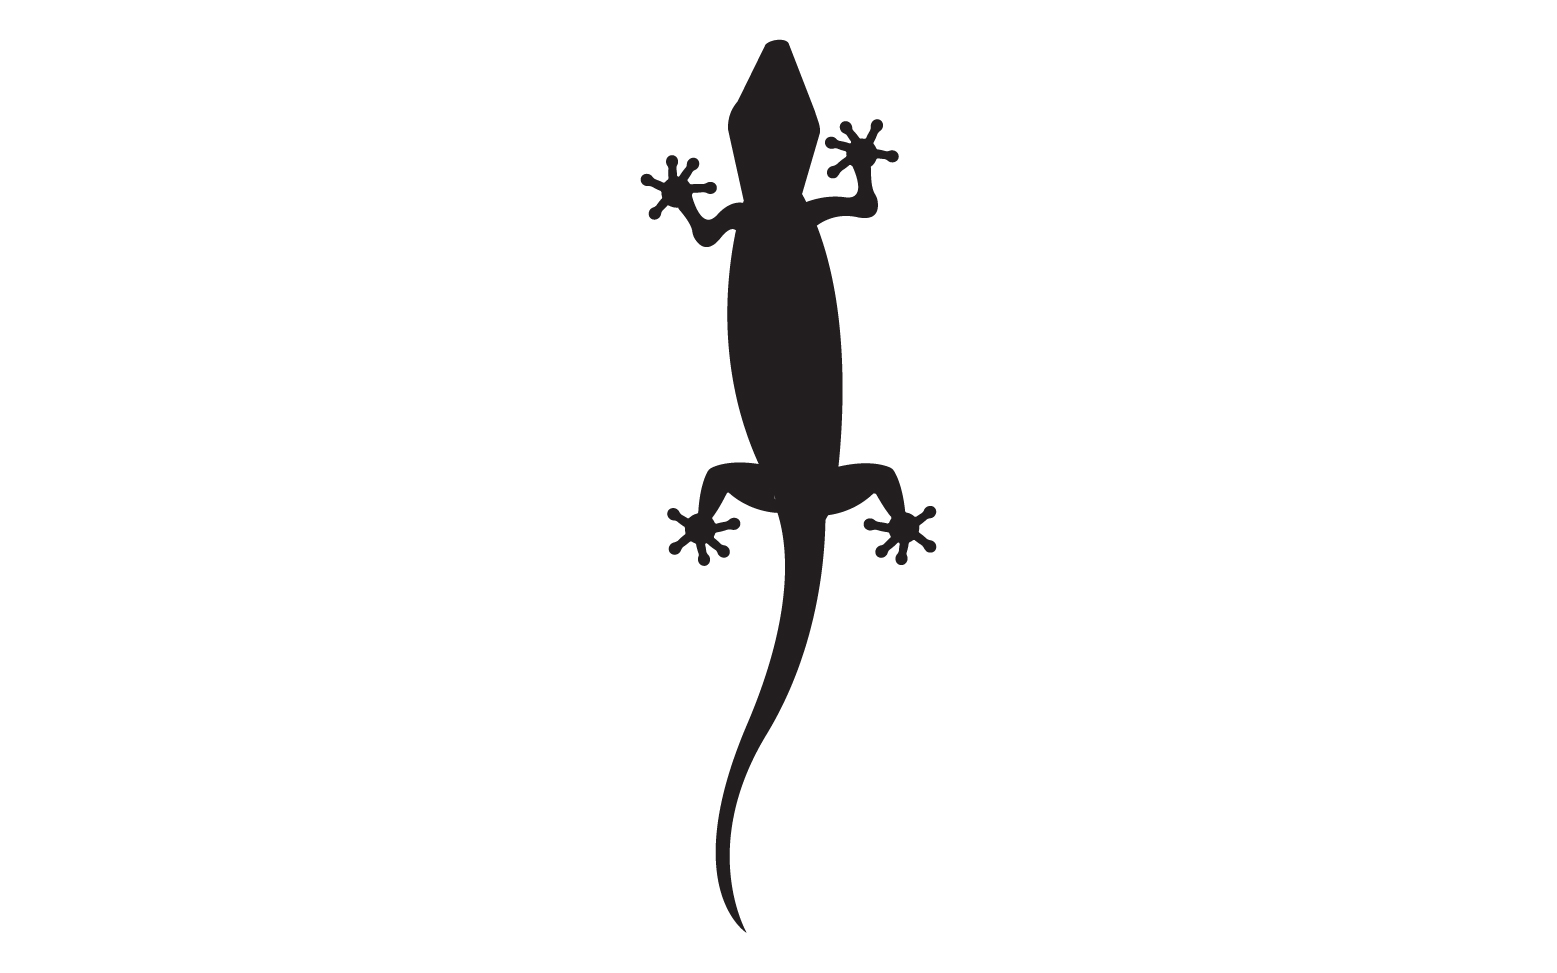 Lizard chameleon home lizard logo v29